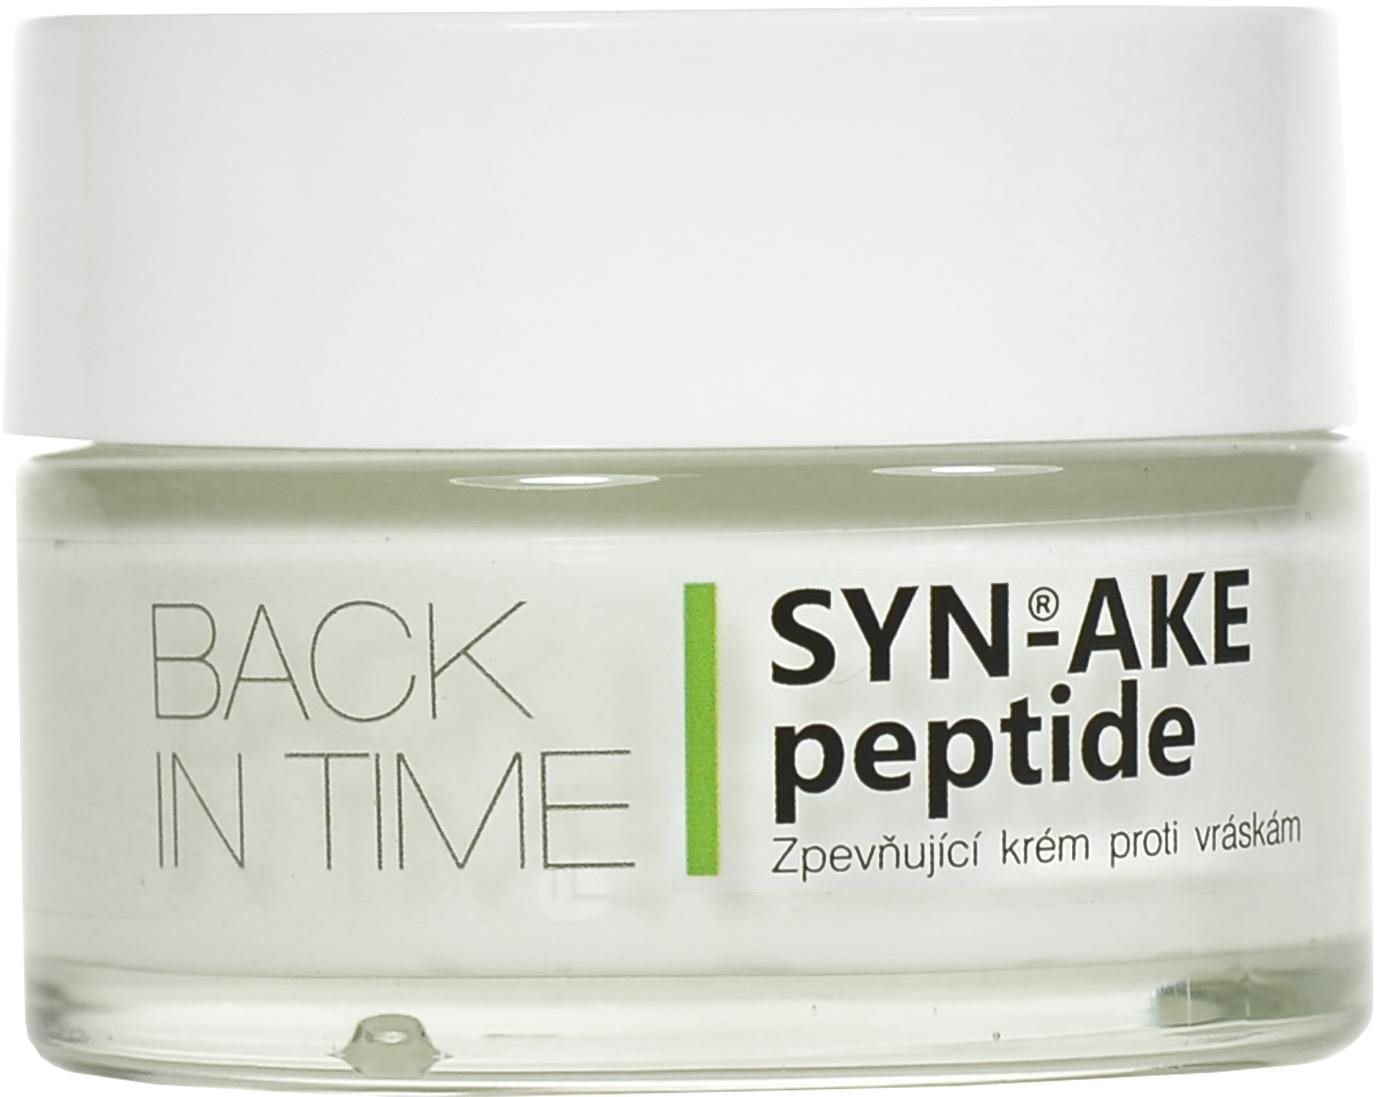 VIVACO Vivaderm SYN-AKE peptide Zpevňující krém proti vráskám 50 ml